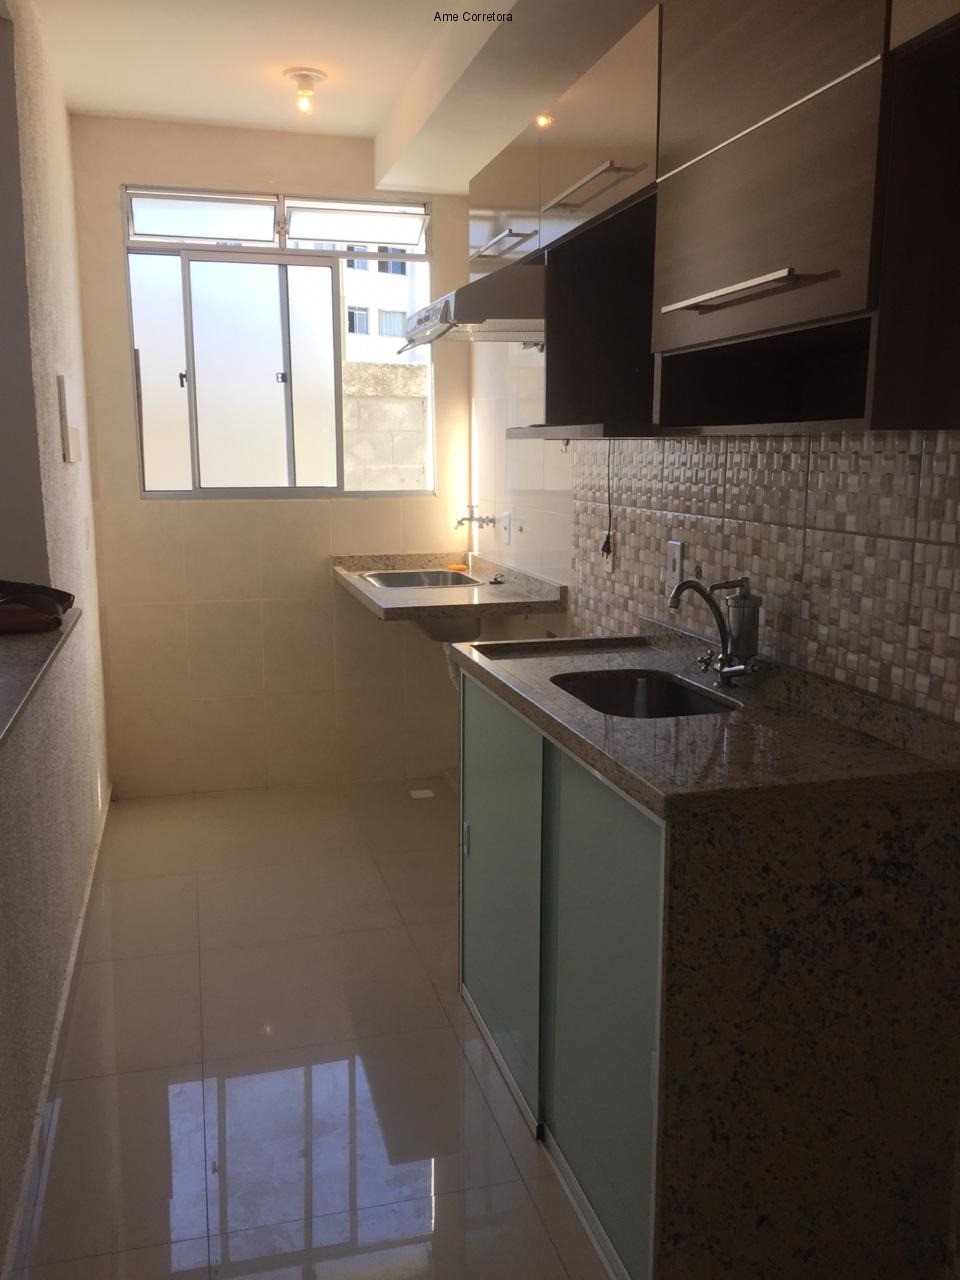 FOTO 01 - Apartamento 2 quartos para alugar Rio de Janeiro,RJ Campo Grande - R$ 850 - AP00333 - 1